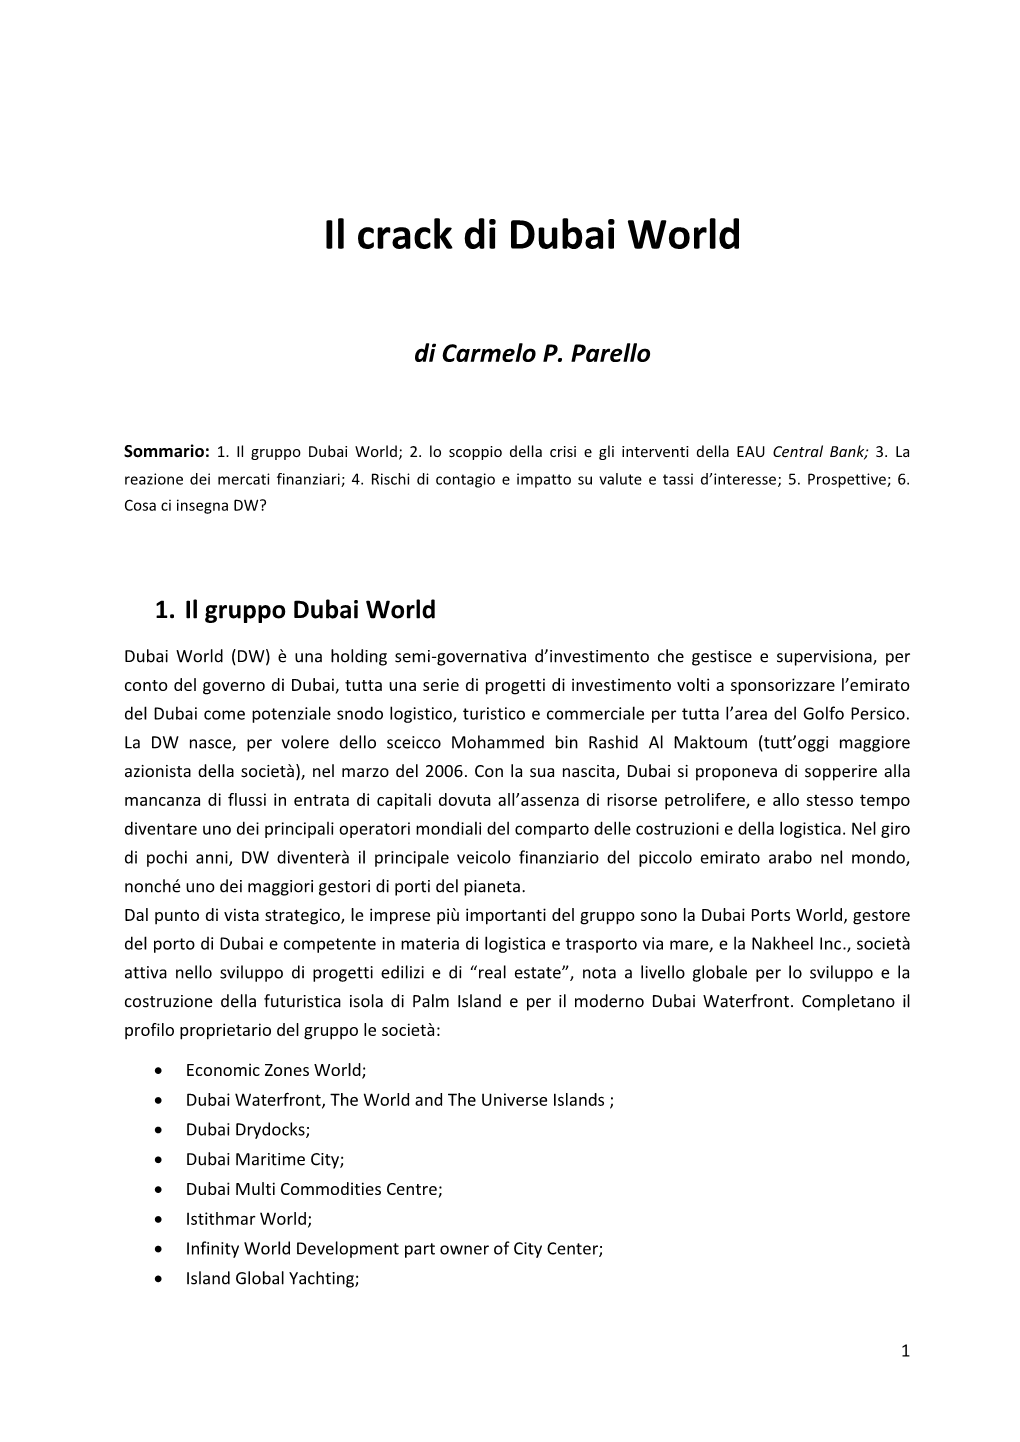 Il Crack Di Dubai World